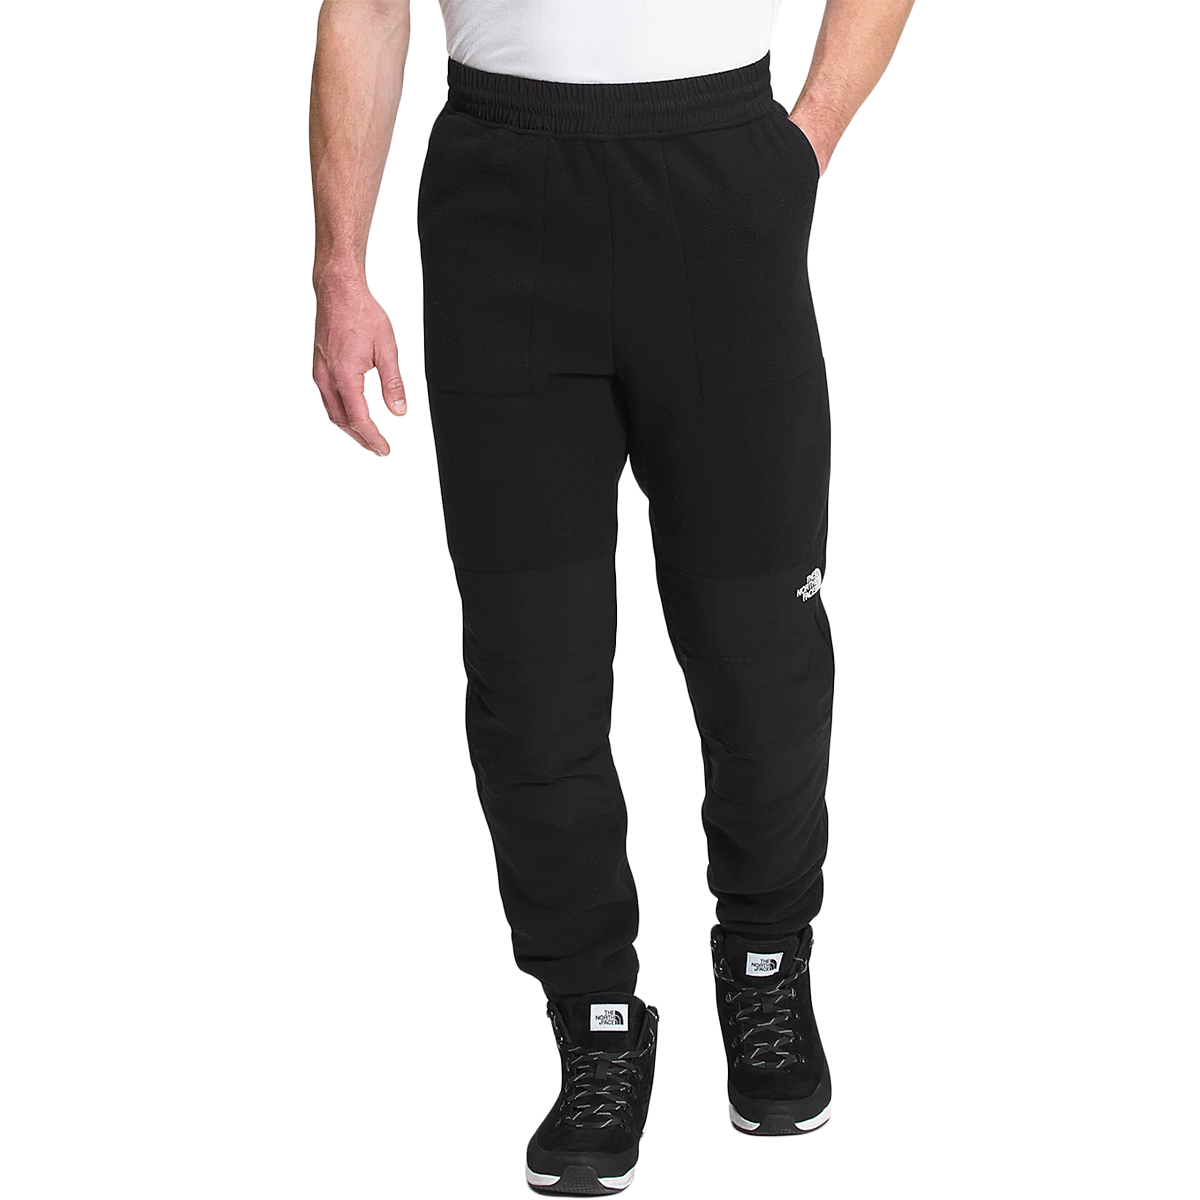 Selected Homme - Pantalon de jogging large - Noir